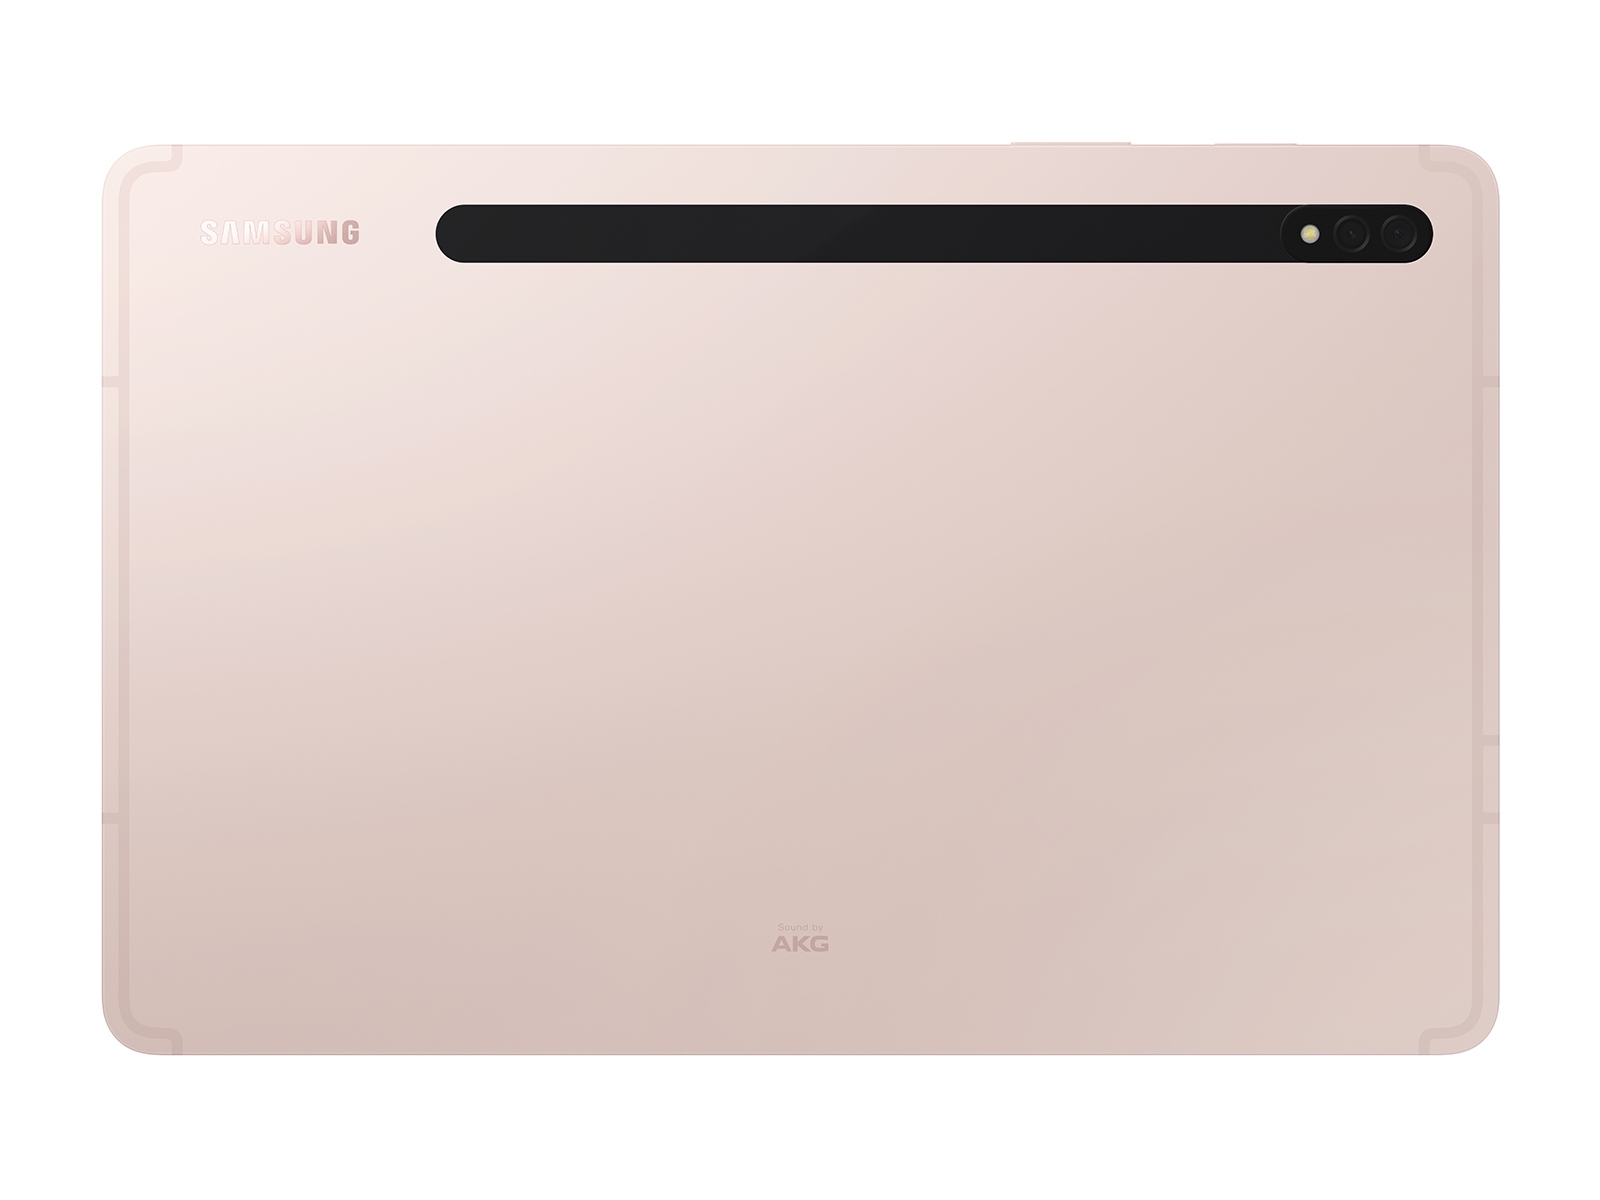 SM-X700NIDBXAR  Galaxy Tab S8 256GB Pink Gold (Wi-Fi